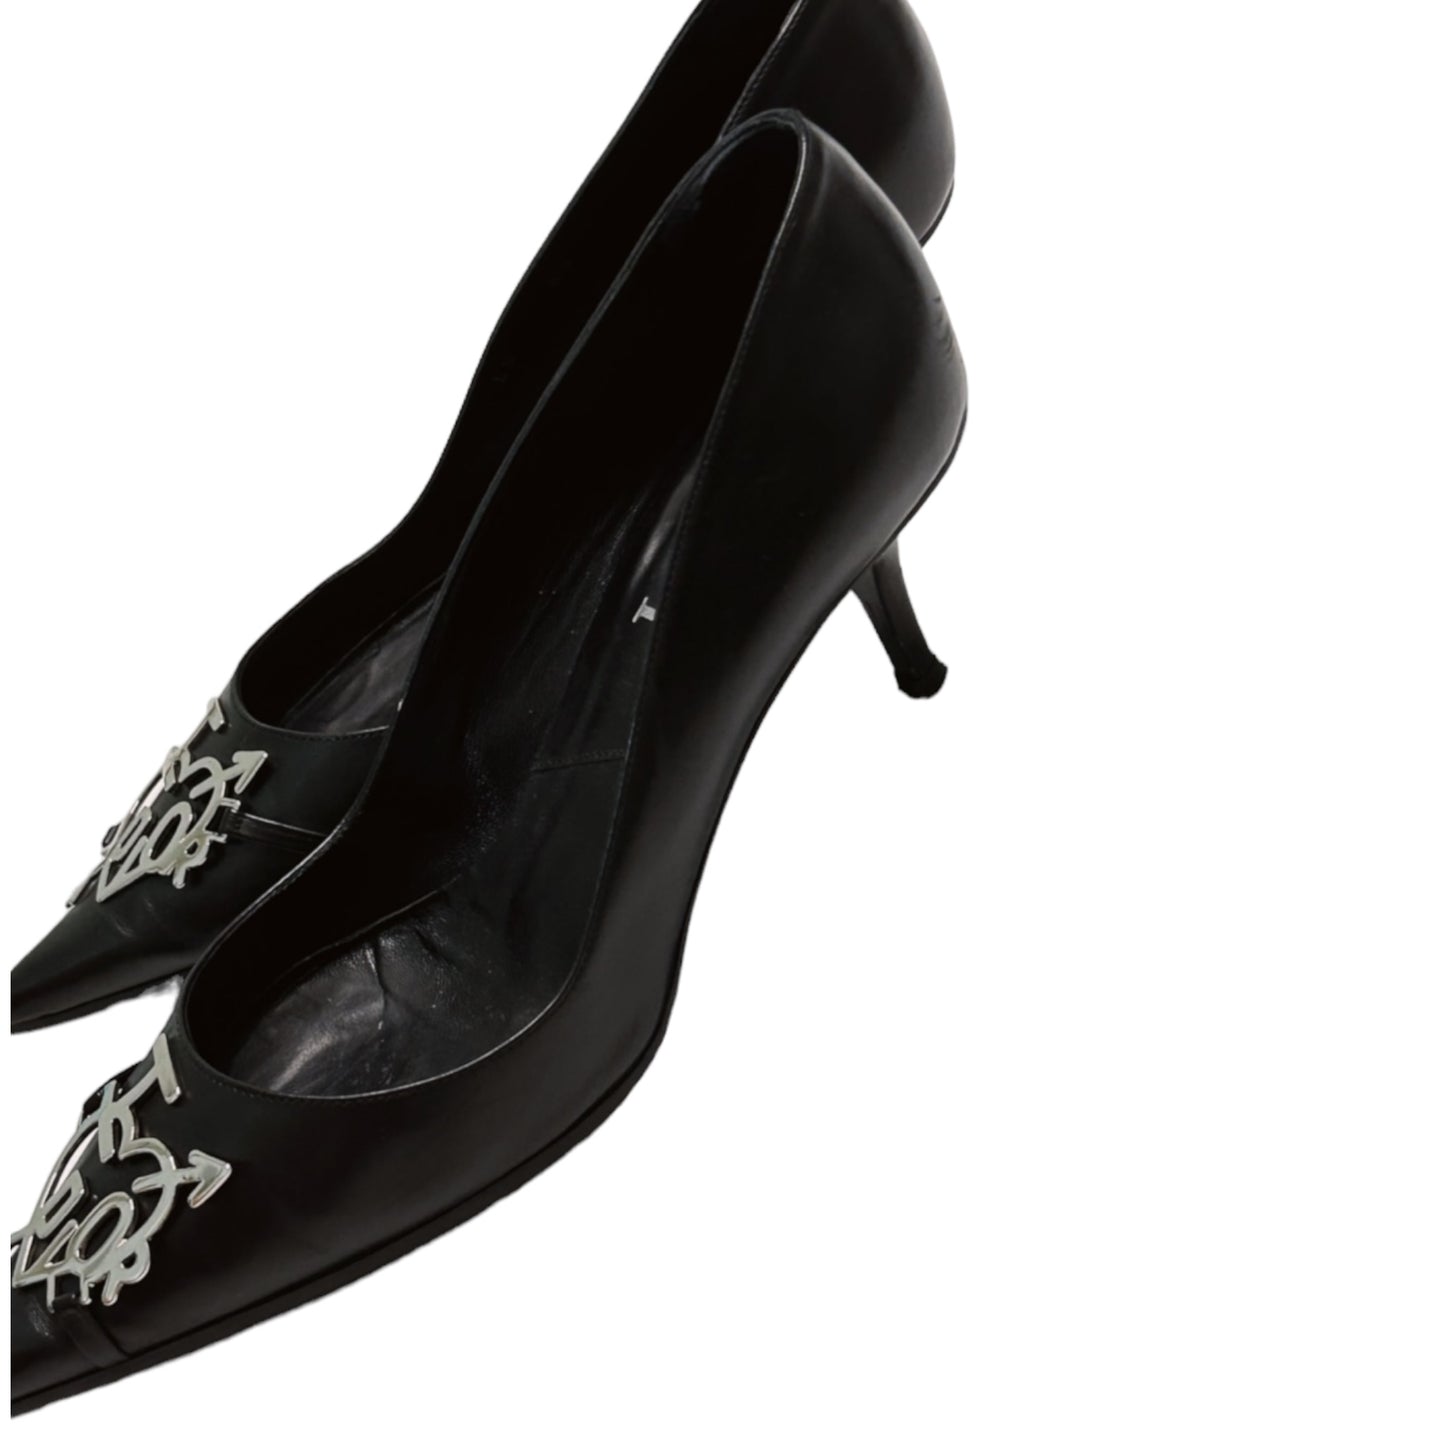 Vintage “I love Dior” black leather heels